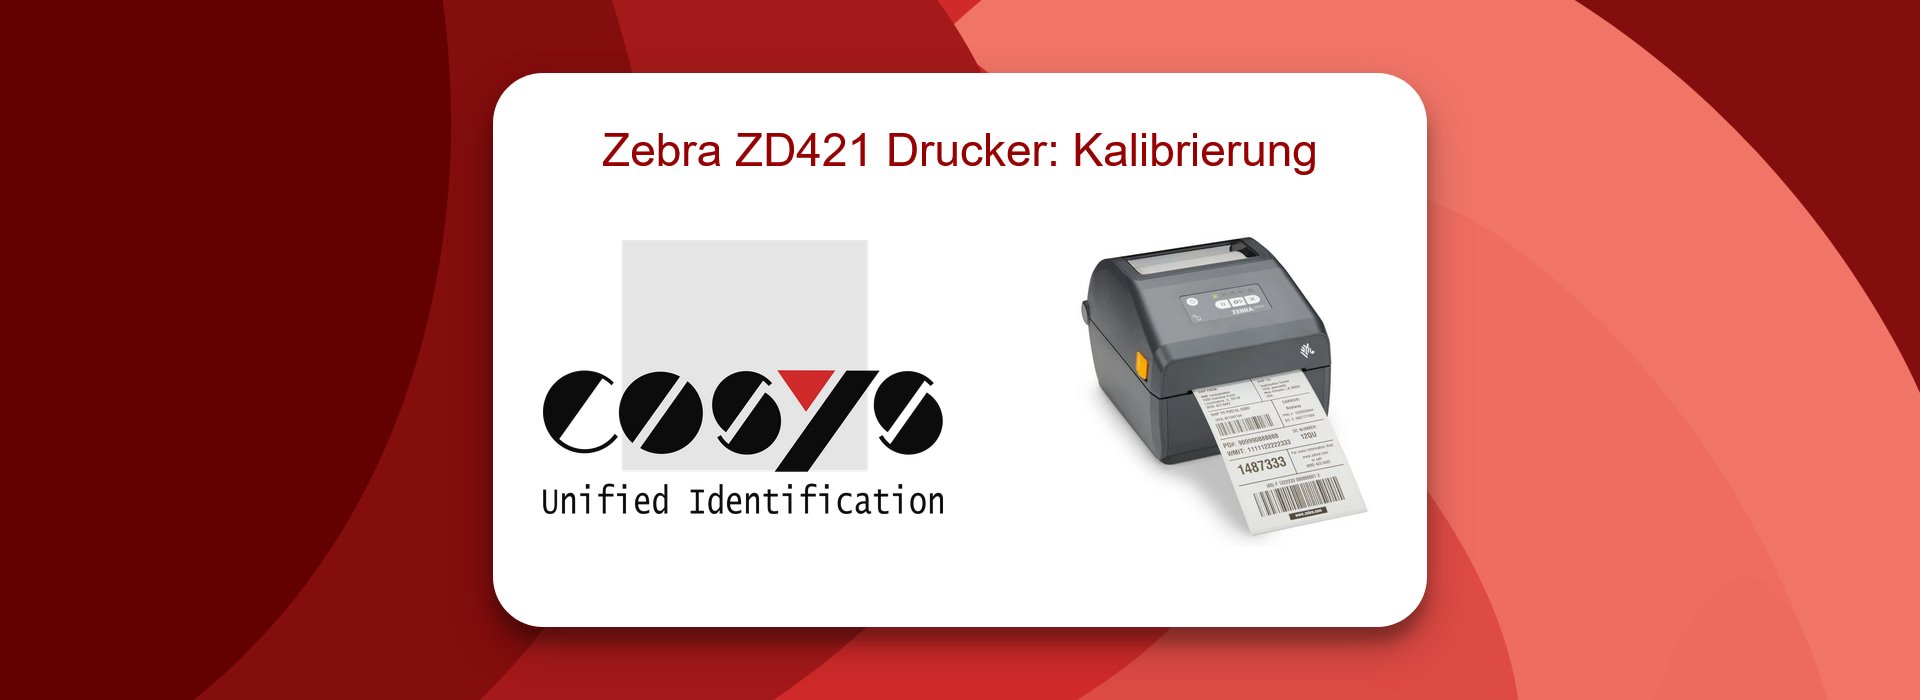 Zebra ZD421 Drucker: Kalibrierungs-Guide